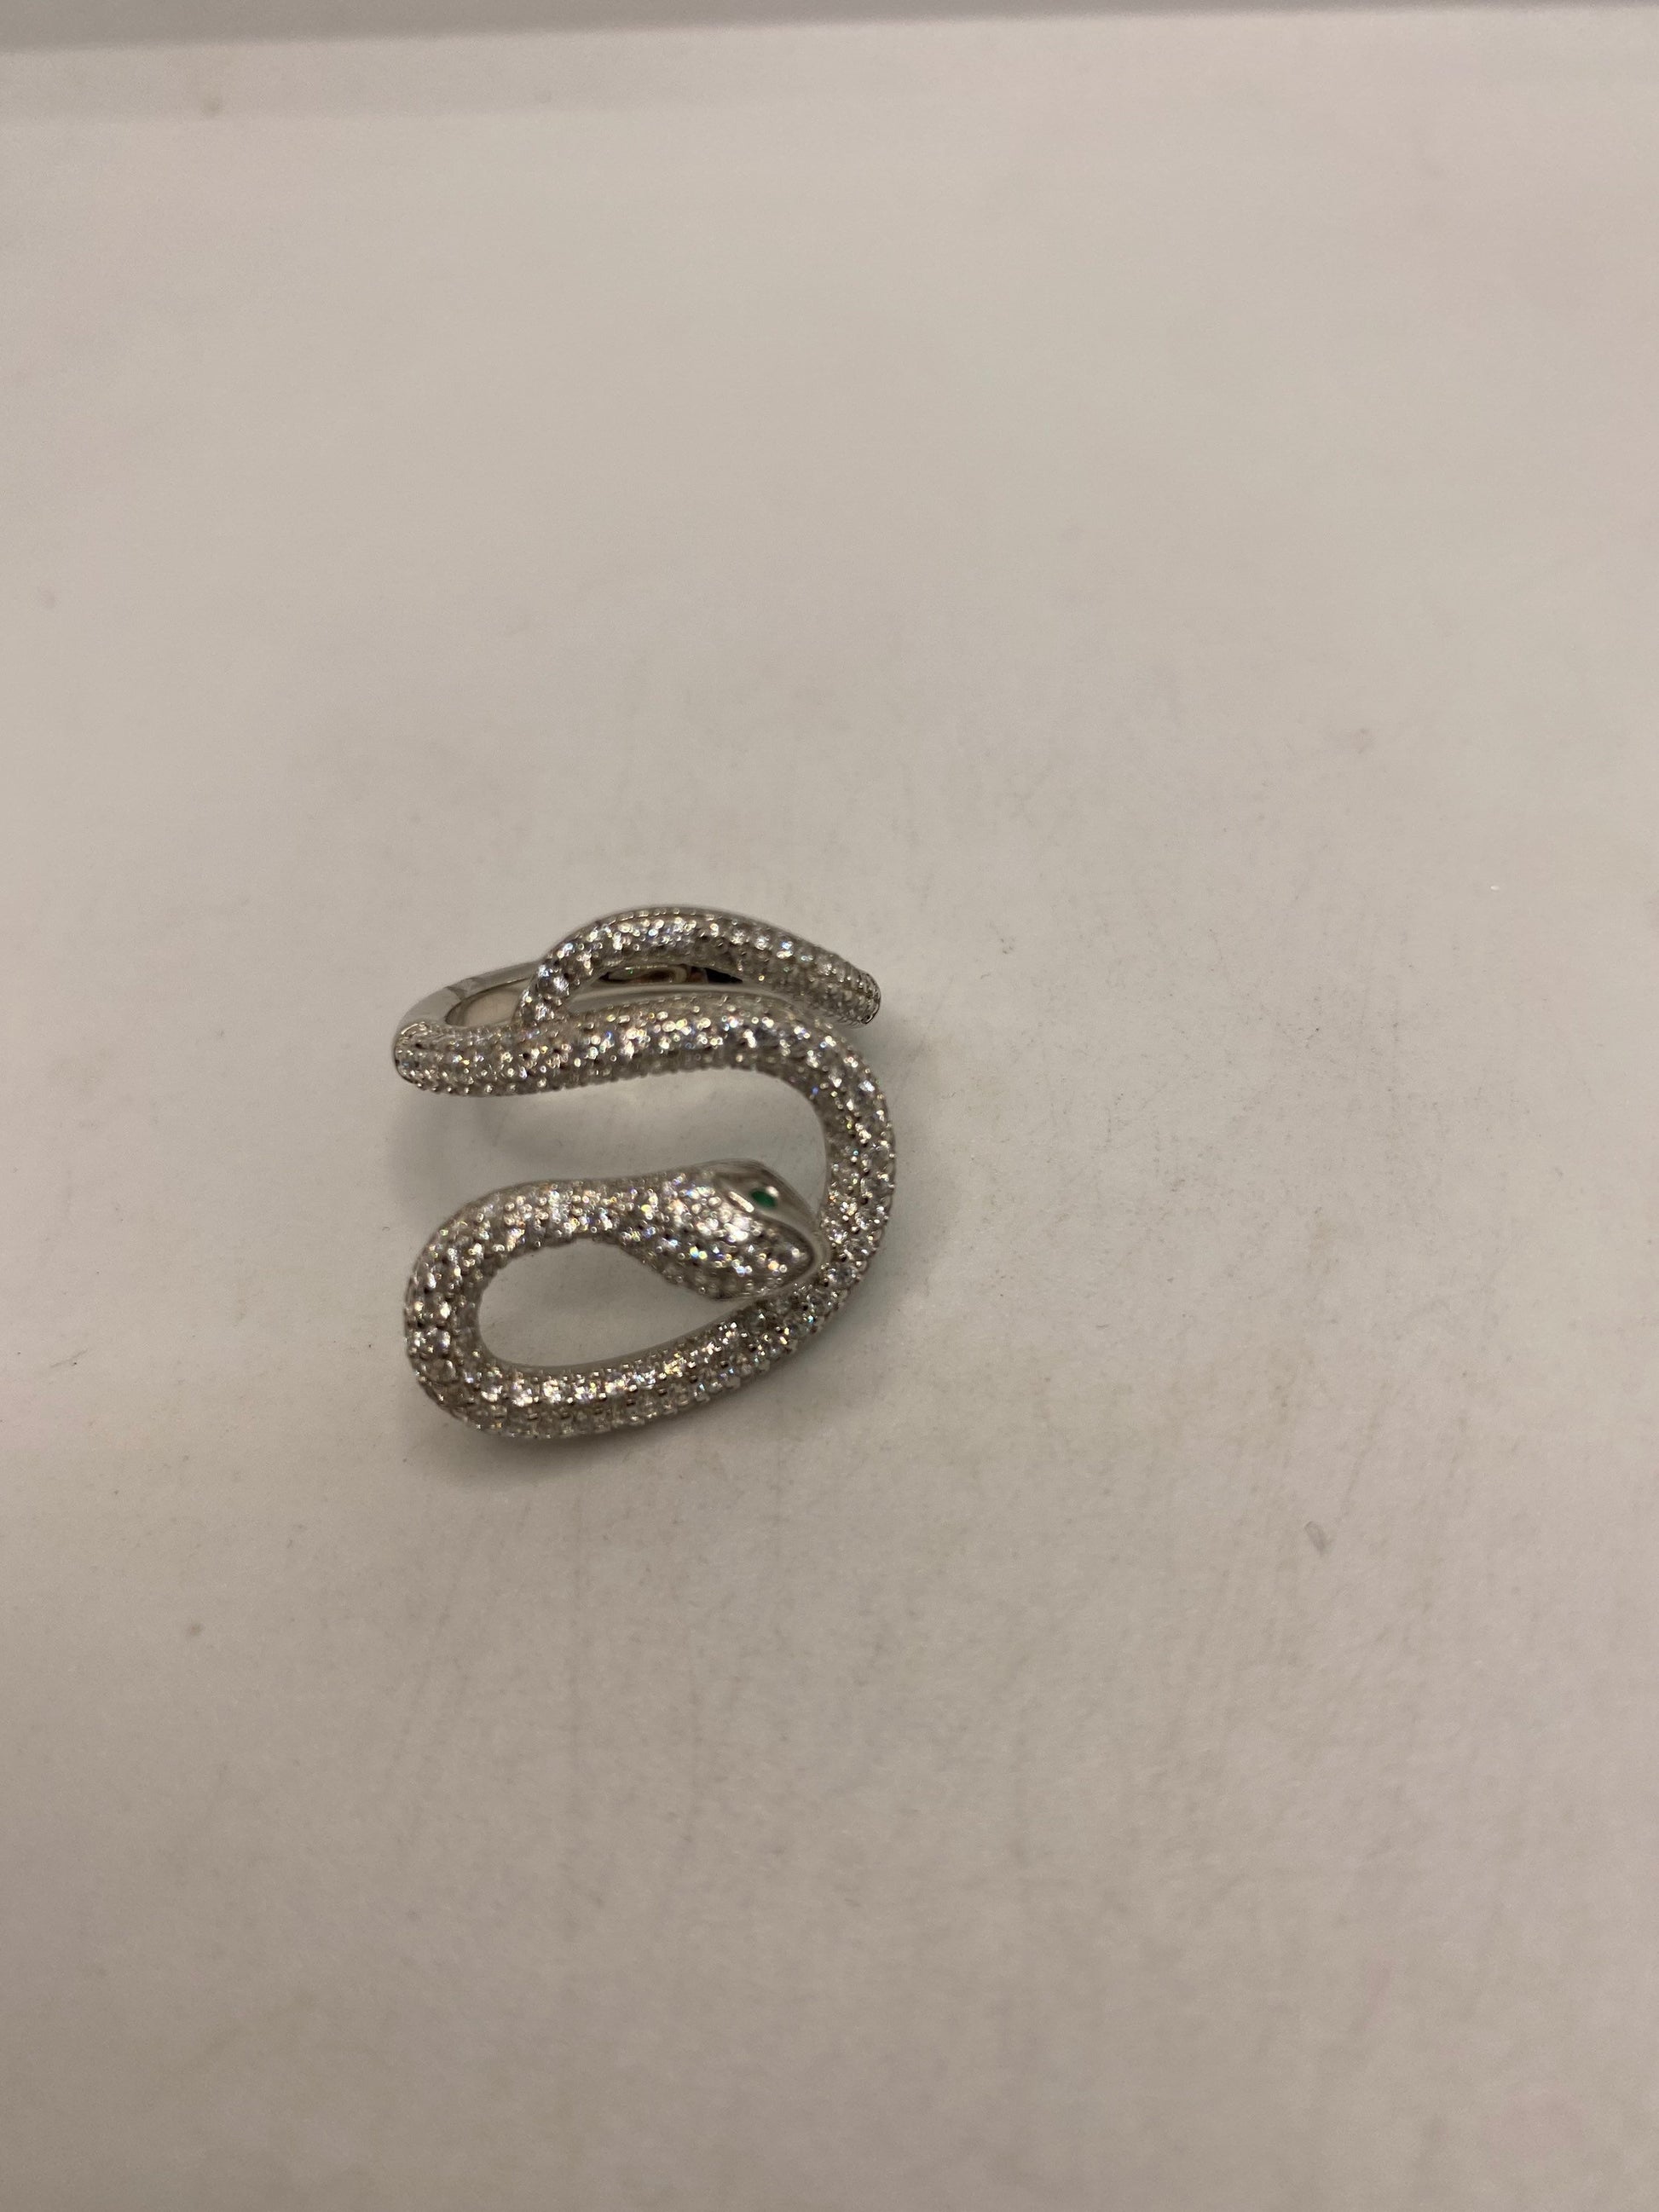 Vintage Snake Ring 925 Sterling Silver Crystal Size 9